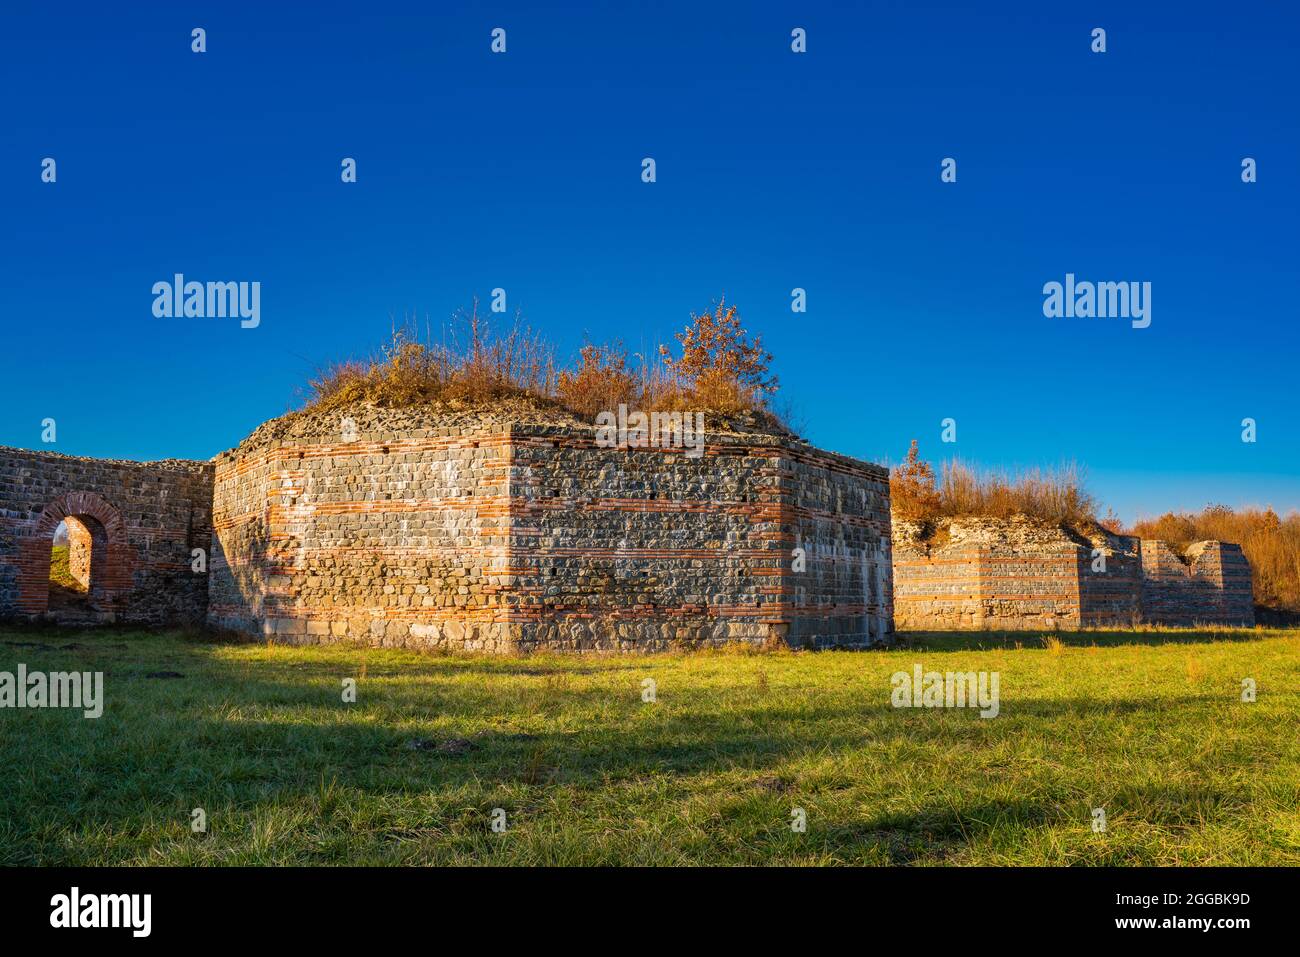 Überreste der antiken römischen Komplex von Palästen und Tempeln Felix Romuliana in der Nähe von Gamzigrad, Serbien. Seit 2007 ist es als UNESCO-Weltkulturerbe S bezeichnet Stockfoto